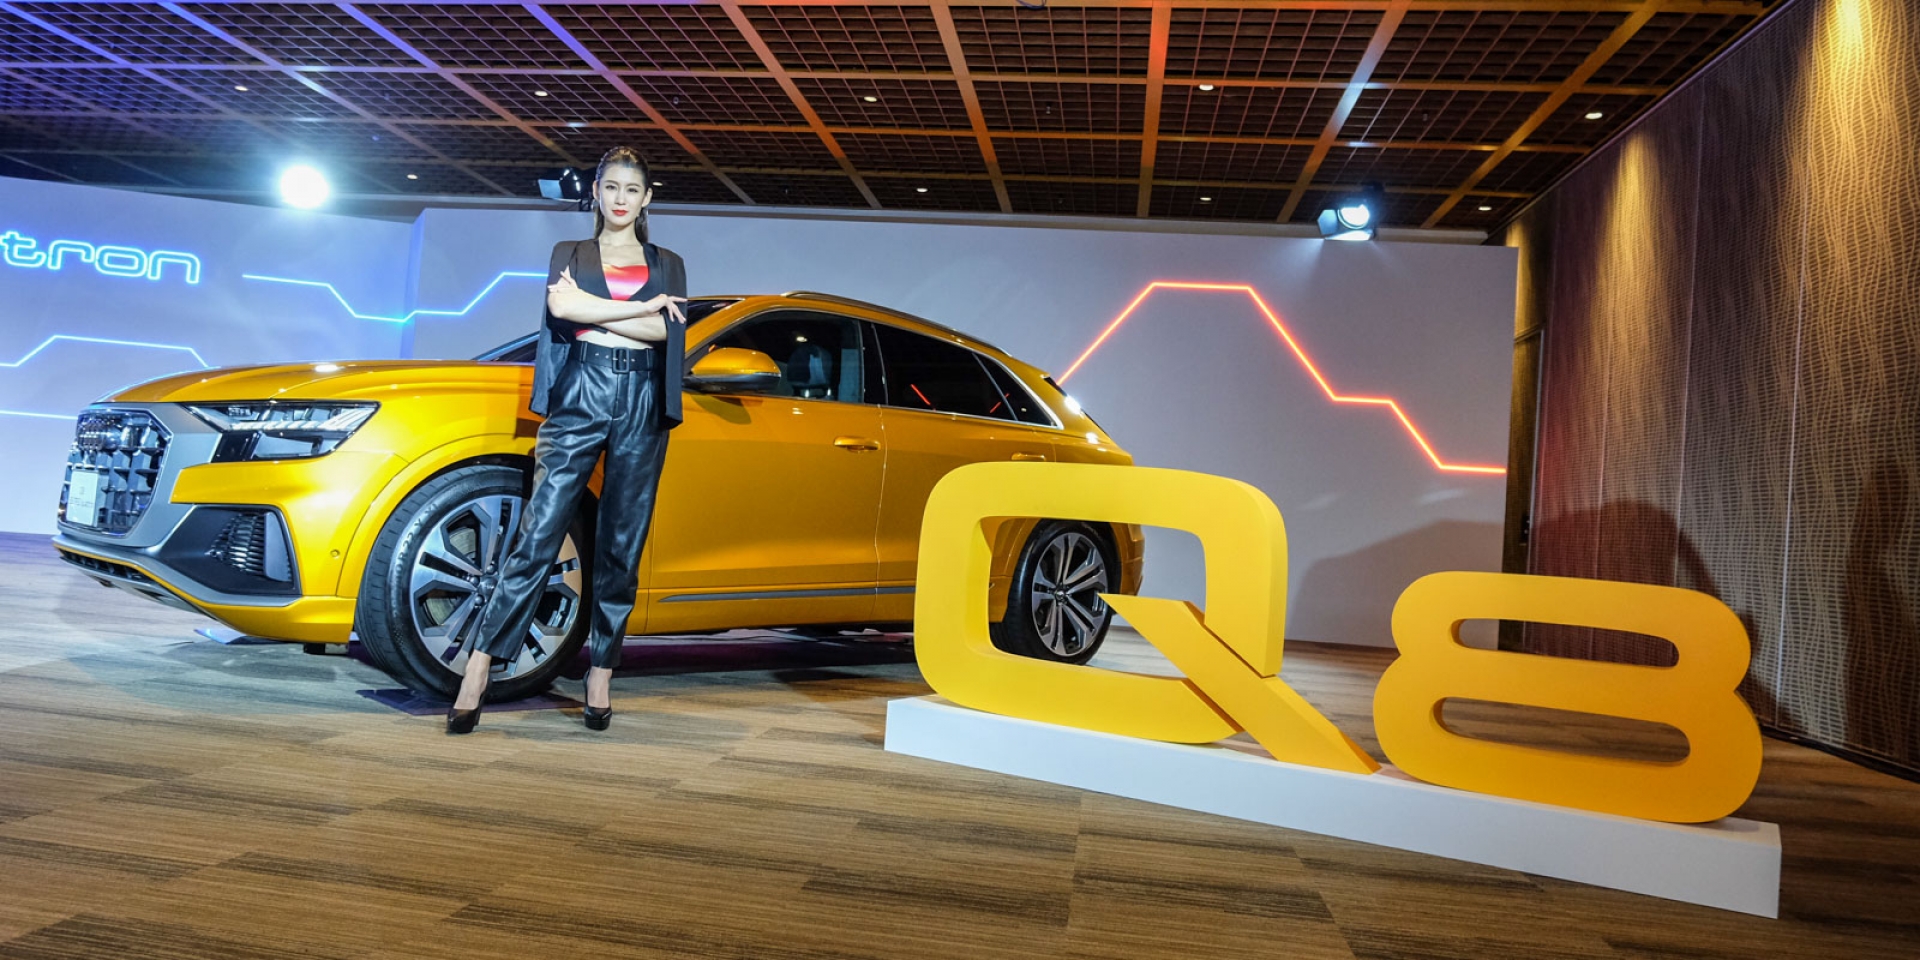 2020世界新車大展，Audi A1預售開跑，Q8運動休旅同步展示！